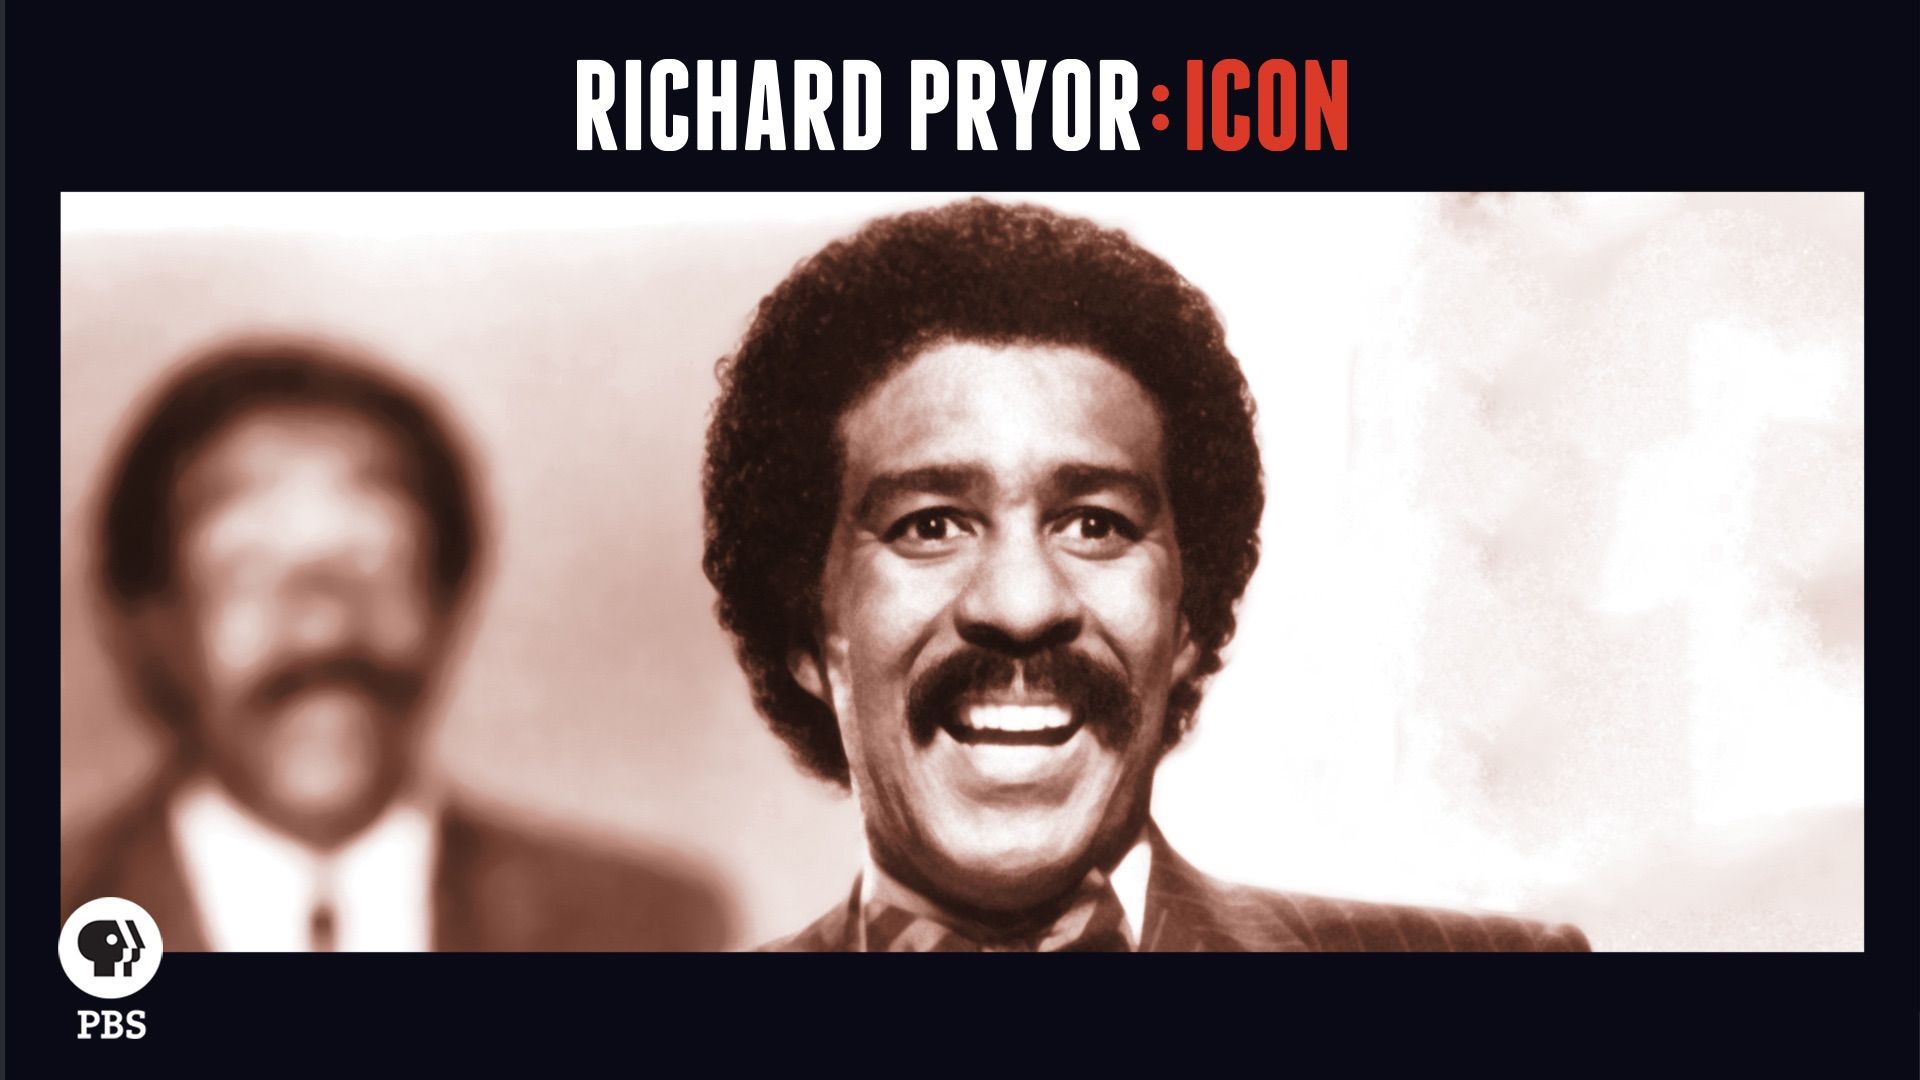 Richard Pryor: Icon Backdrop